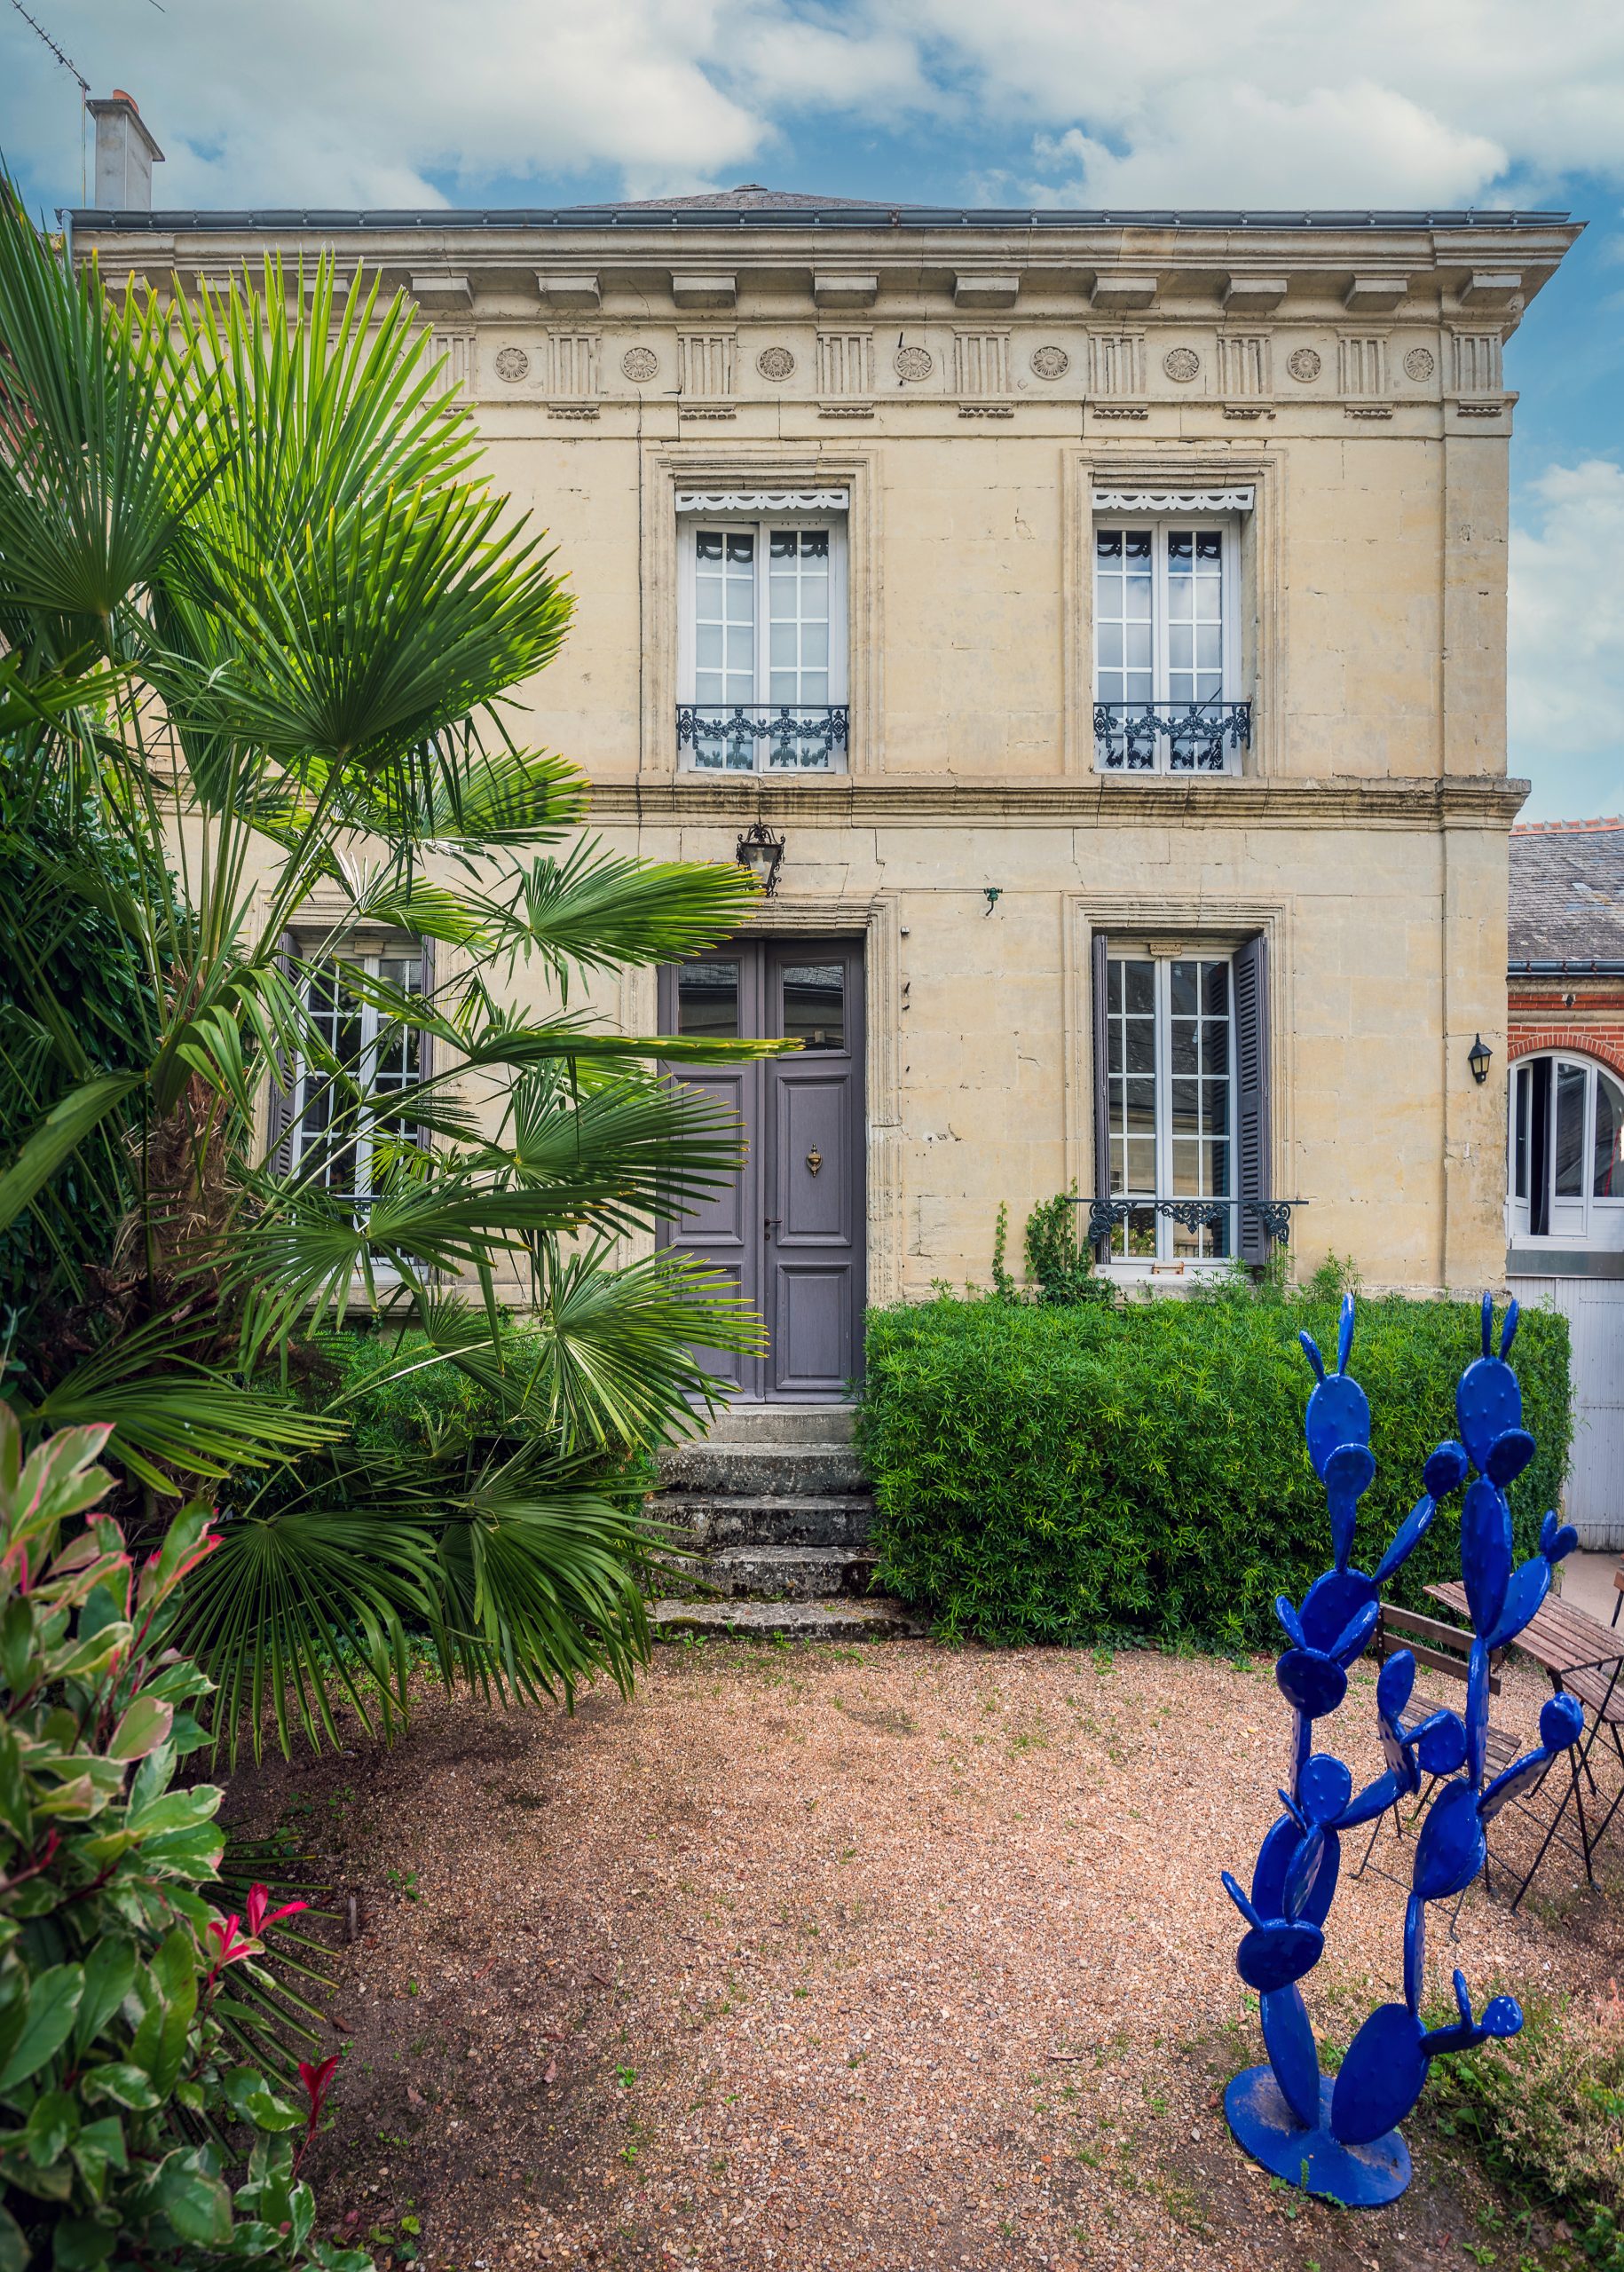 Maison d’hôtes & galerie d’art au cœur des châteaux de la Loire : Un lieu de vie atypique au cœur des châteaux de la Loire